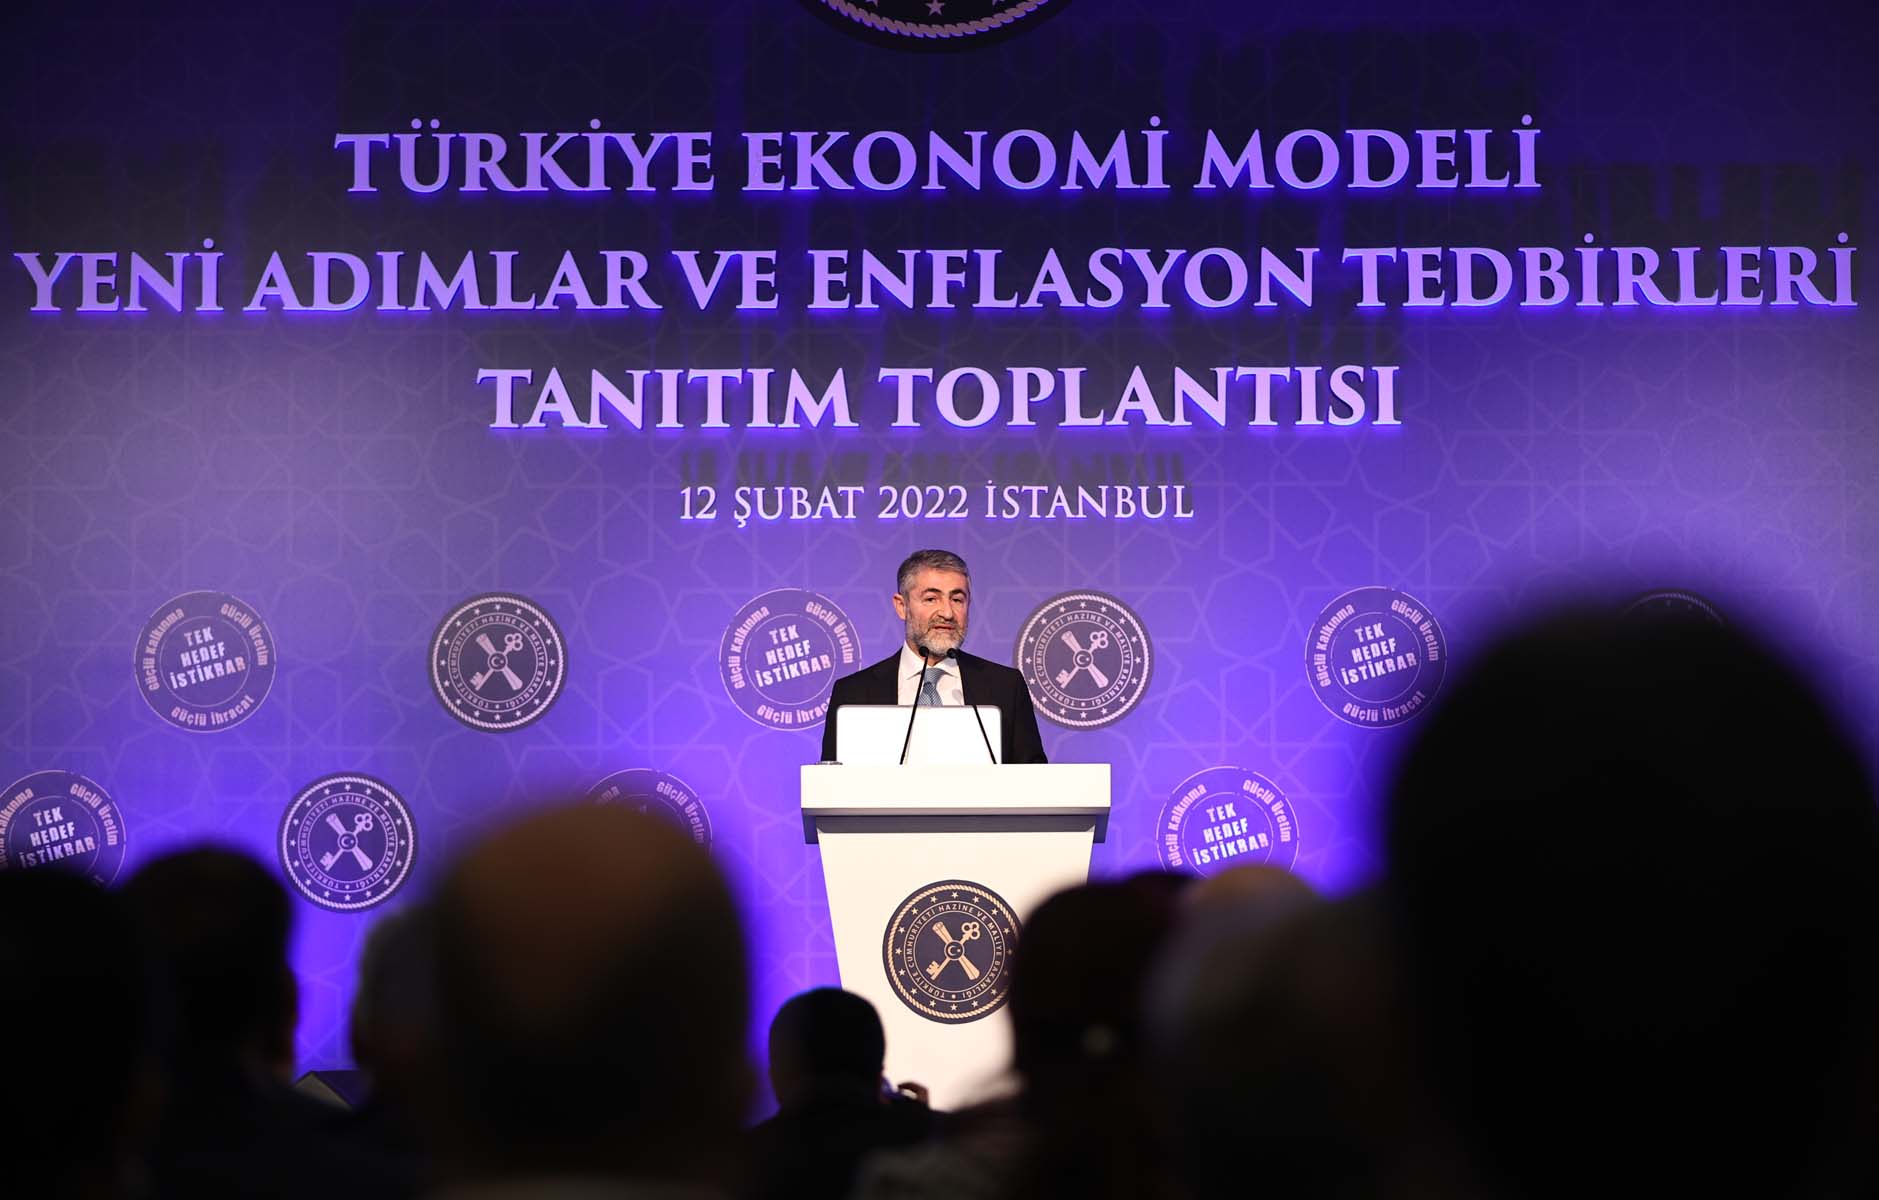 Bakan Nureddin Nebati, Türkiye Ekonomi Modeli ve enflasyon tedbirlerini açıkladı! Yastık altındaki altınlar sisteme kazandırılacak 